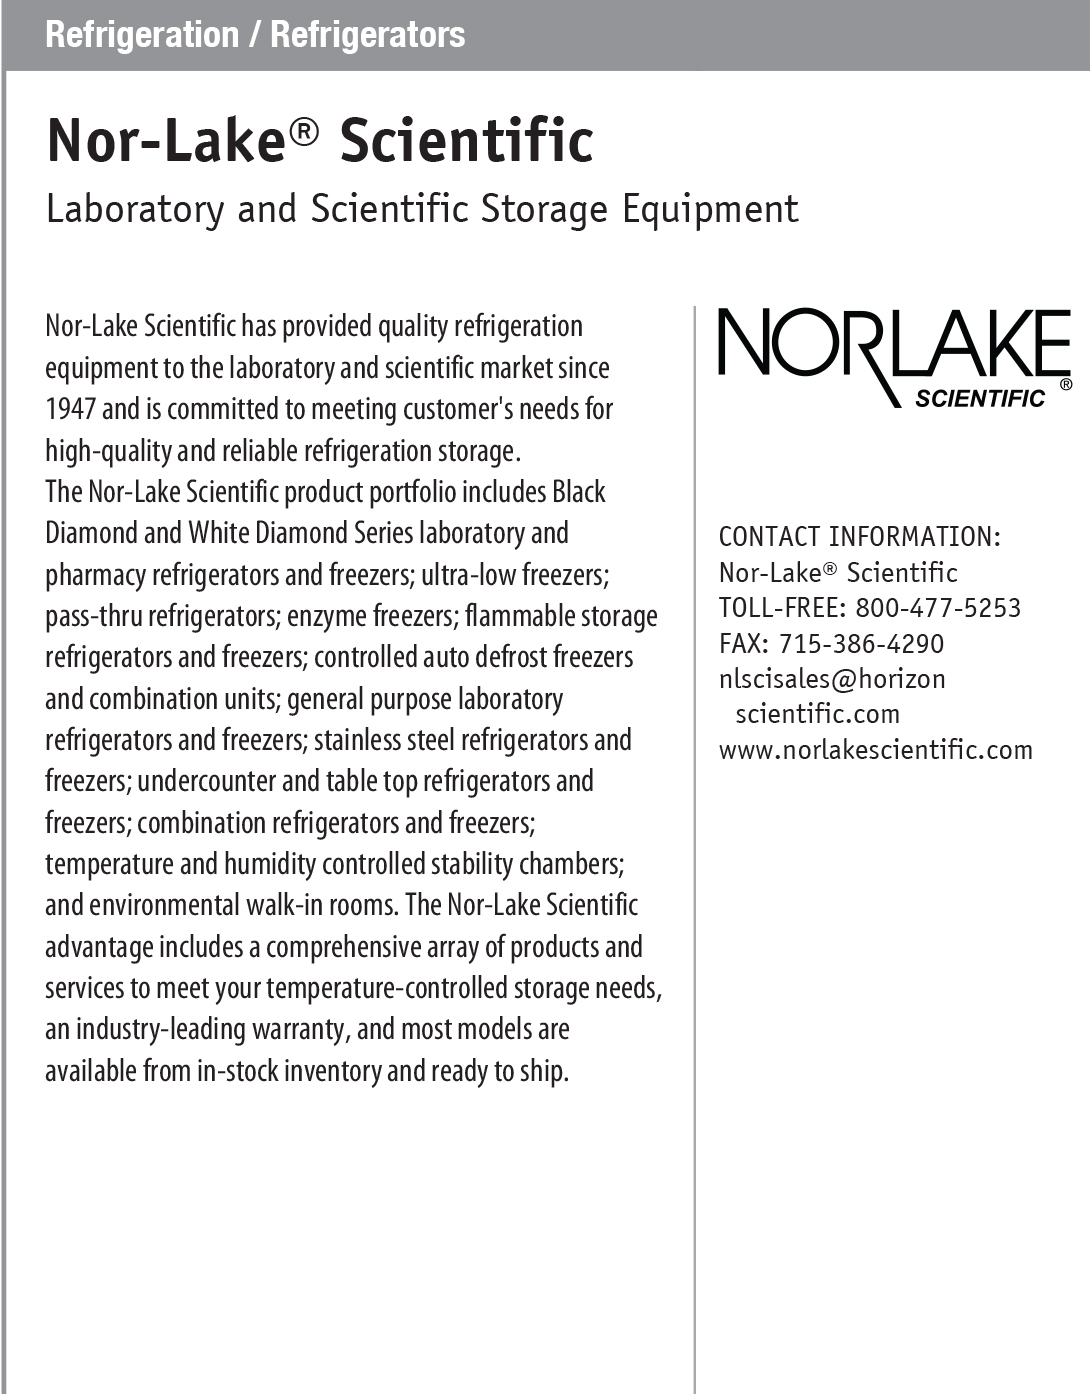 PROFILE_Refrigeration-_-Refrigerators---Nor-Lake®-Scientific.jpg